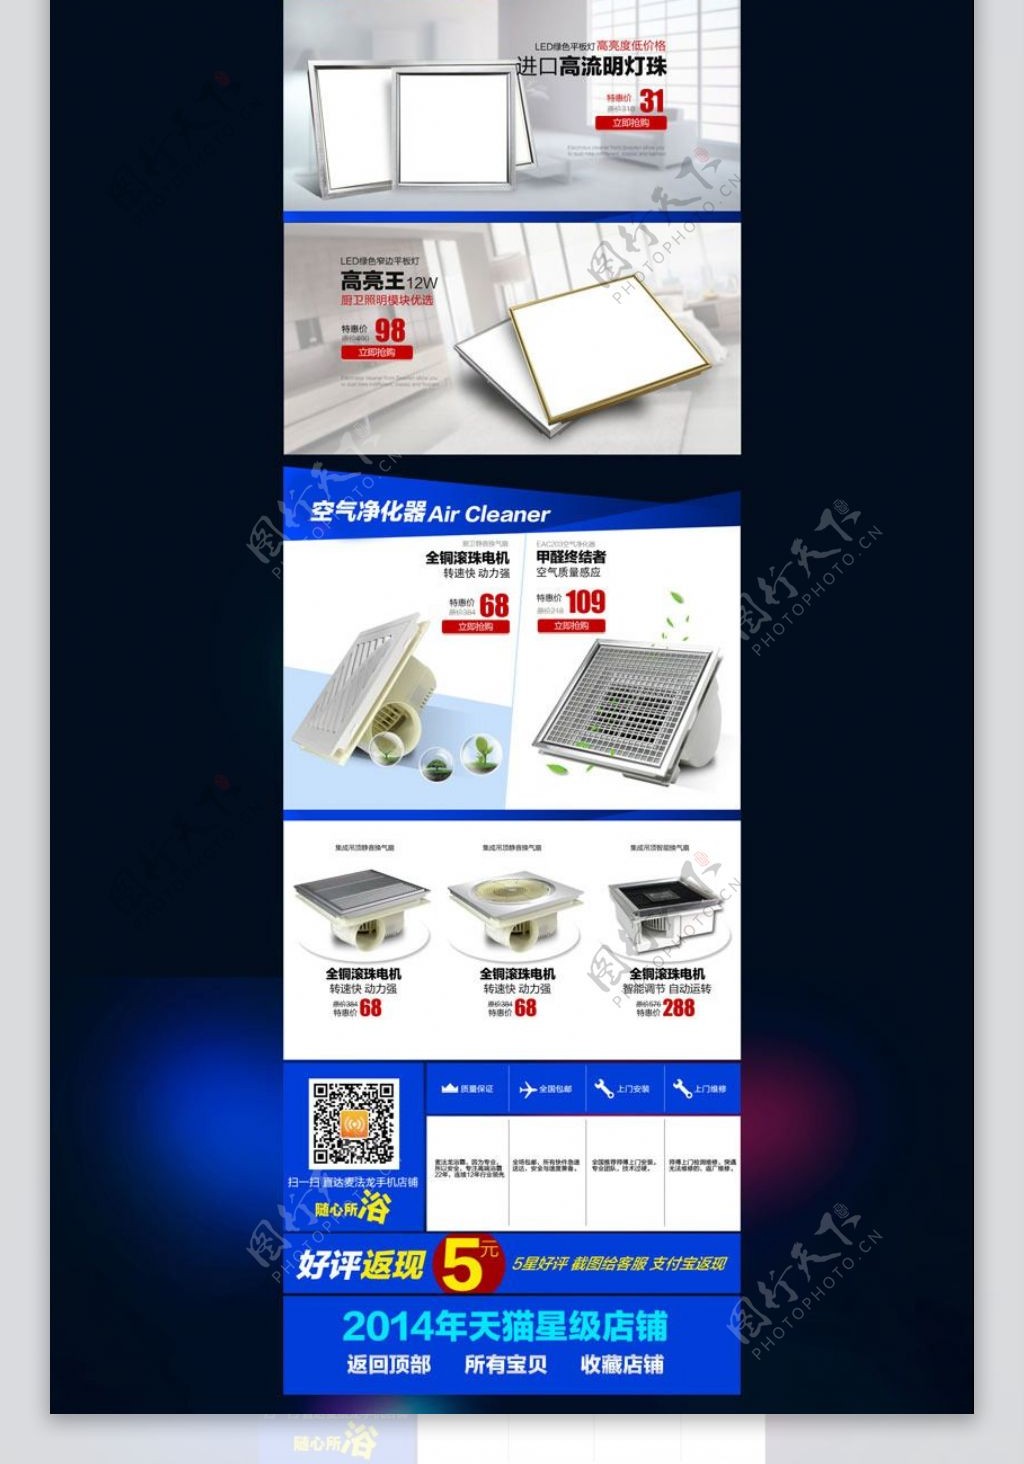 淘宝取暖器促销页面设计PSD素材